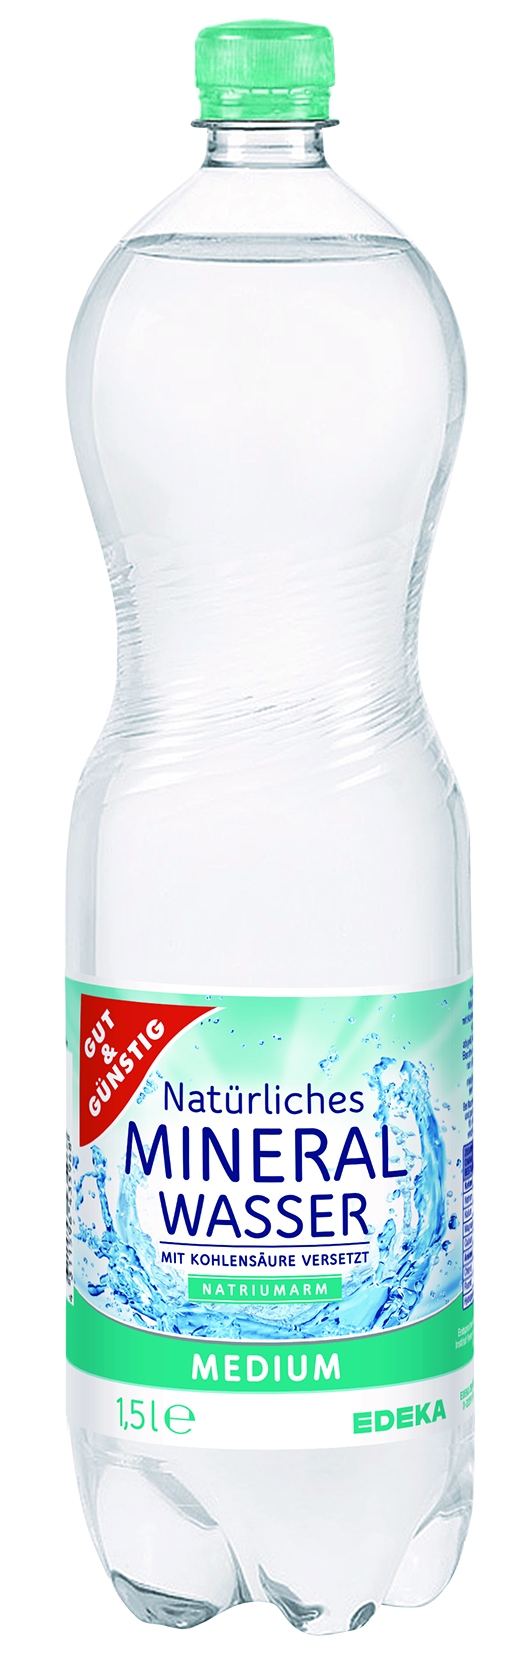 Mineralwasser Medium PET   